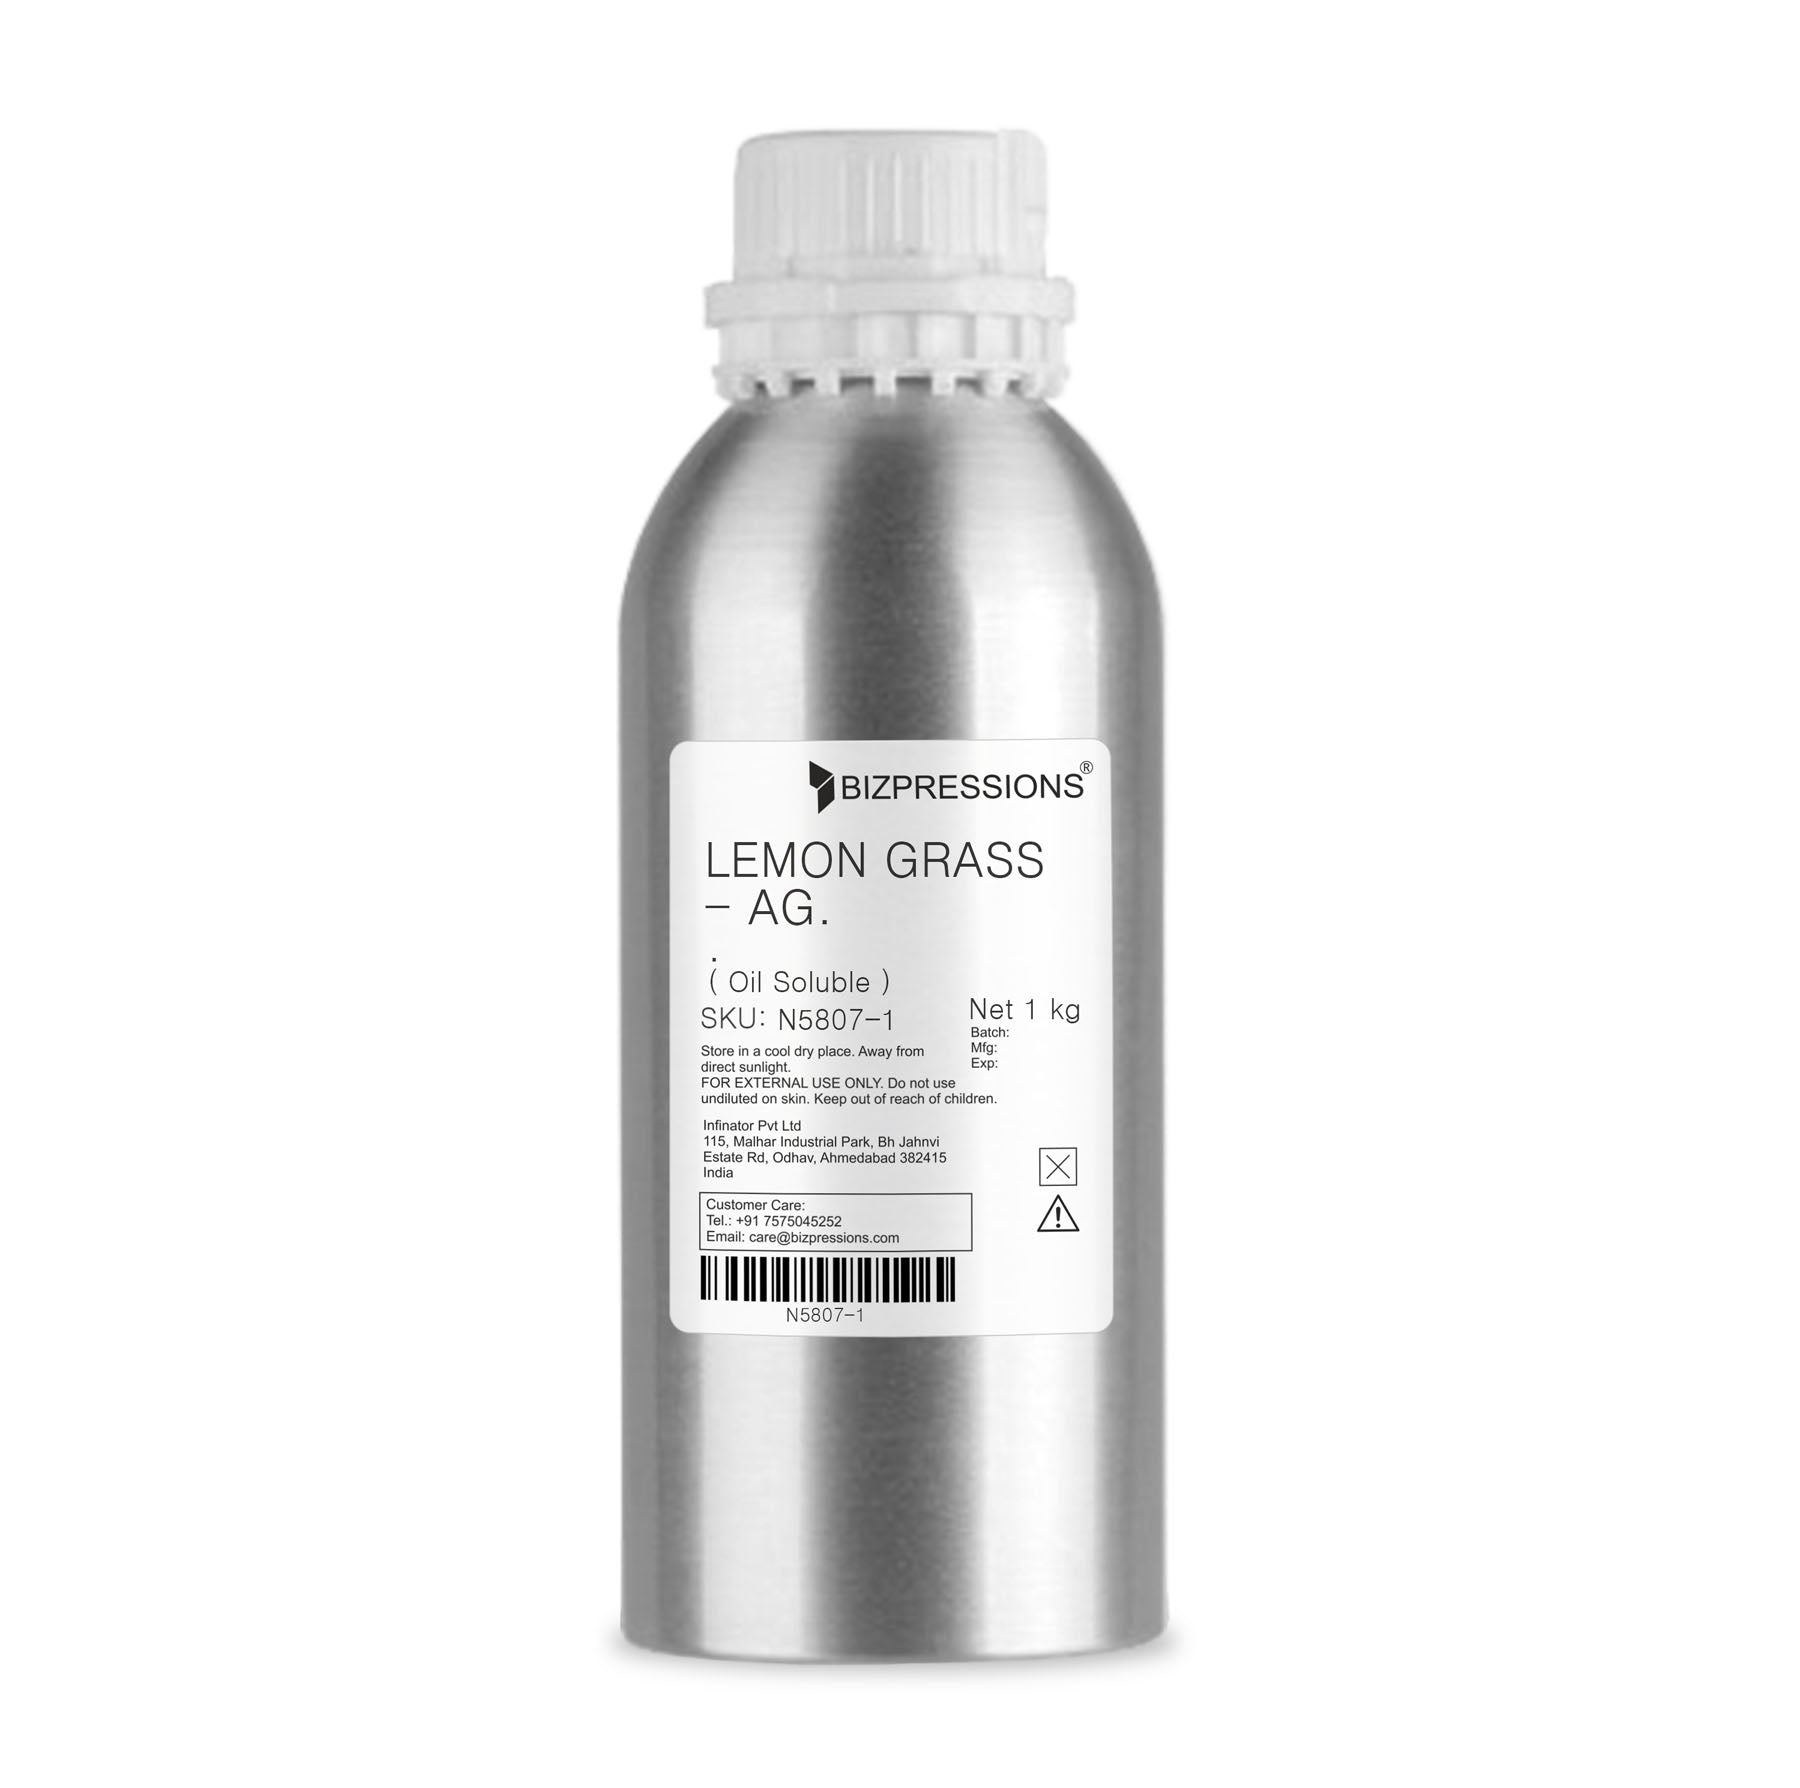 LEMON GRASS - AG. - Fragrance ( Oil Soluble ) - 1 kg